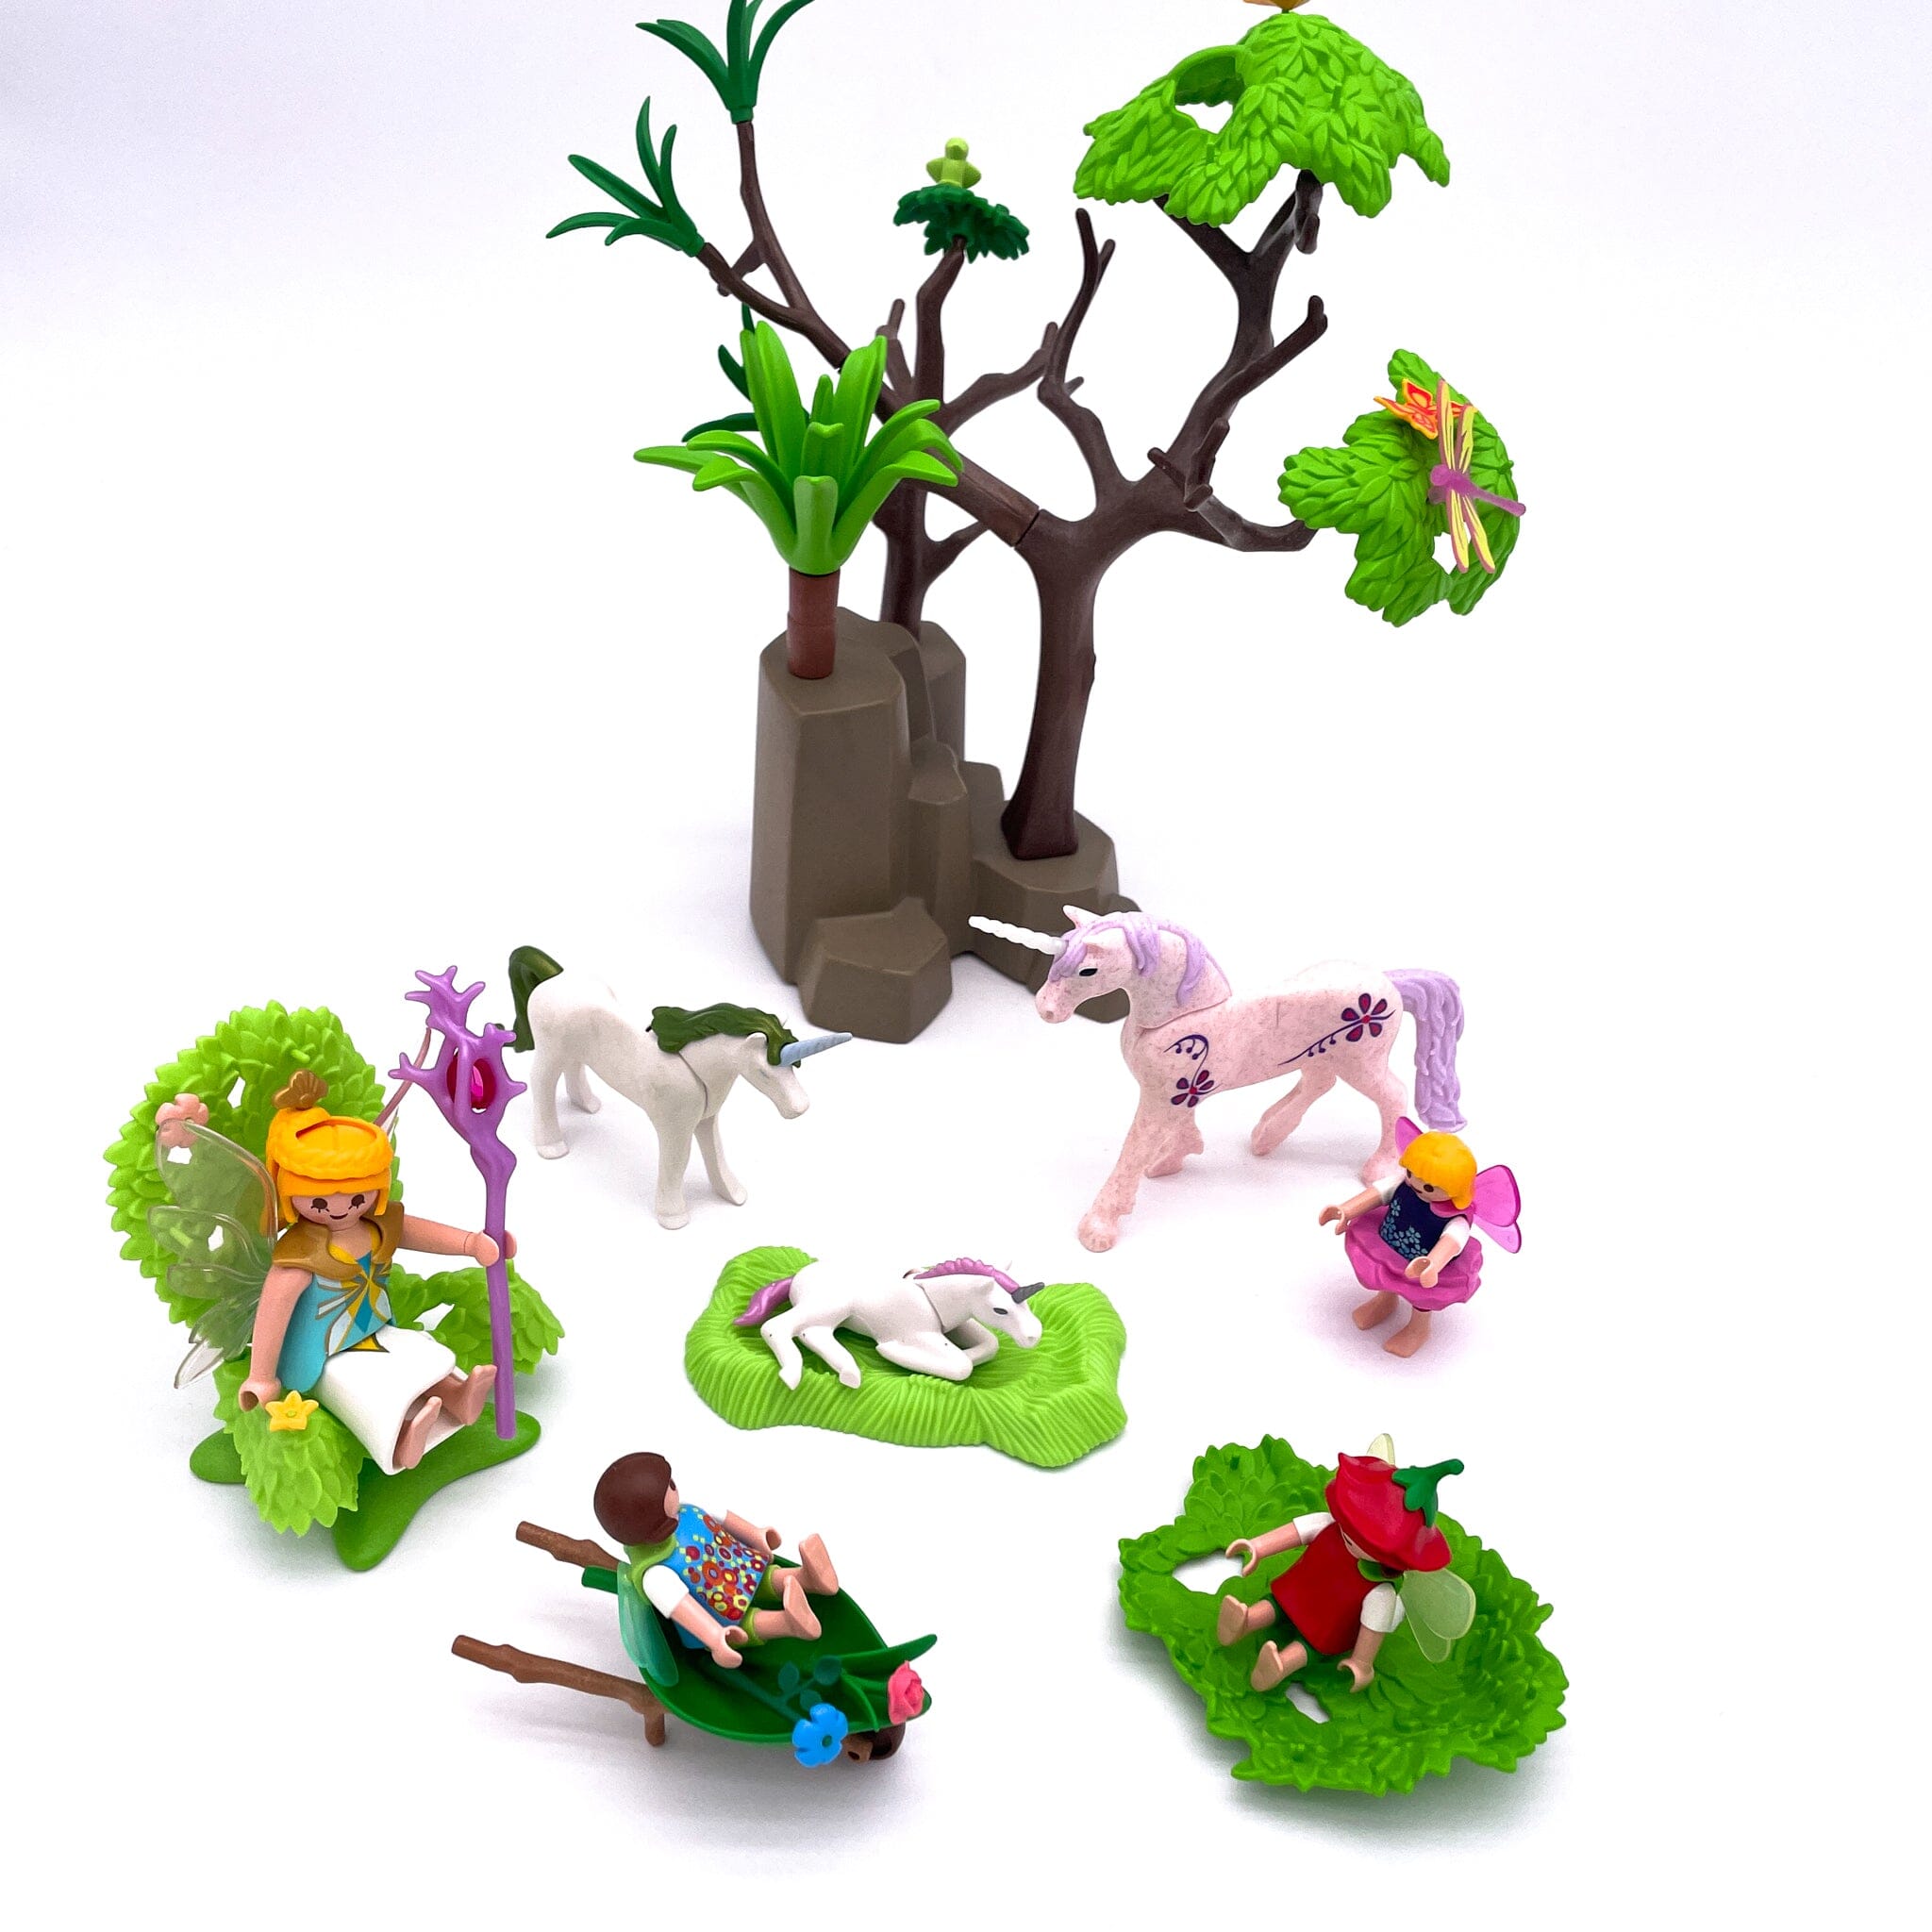 Playmobil set féérique licornes Jeux d'imagination Circule 